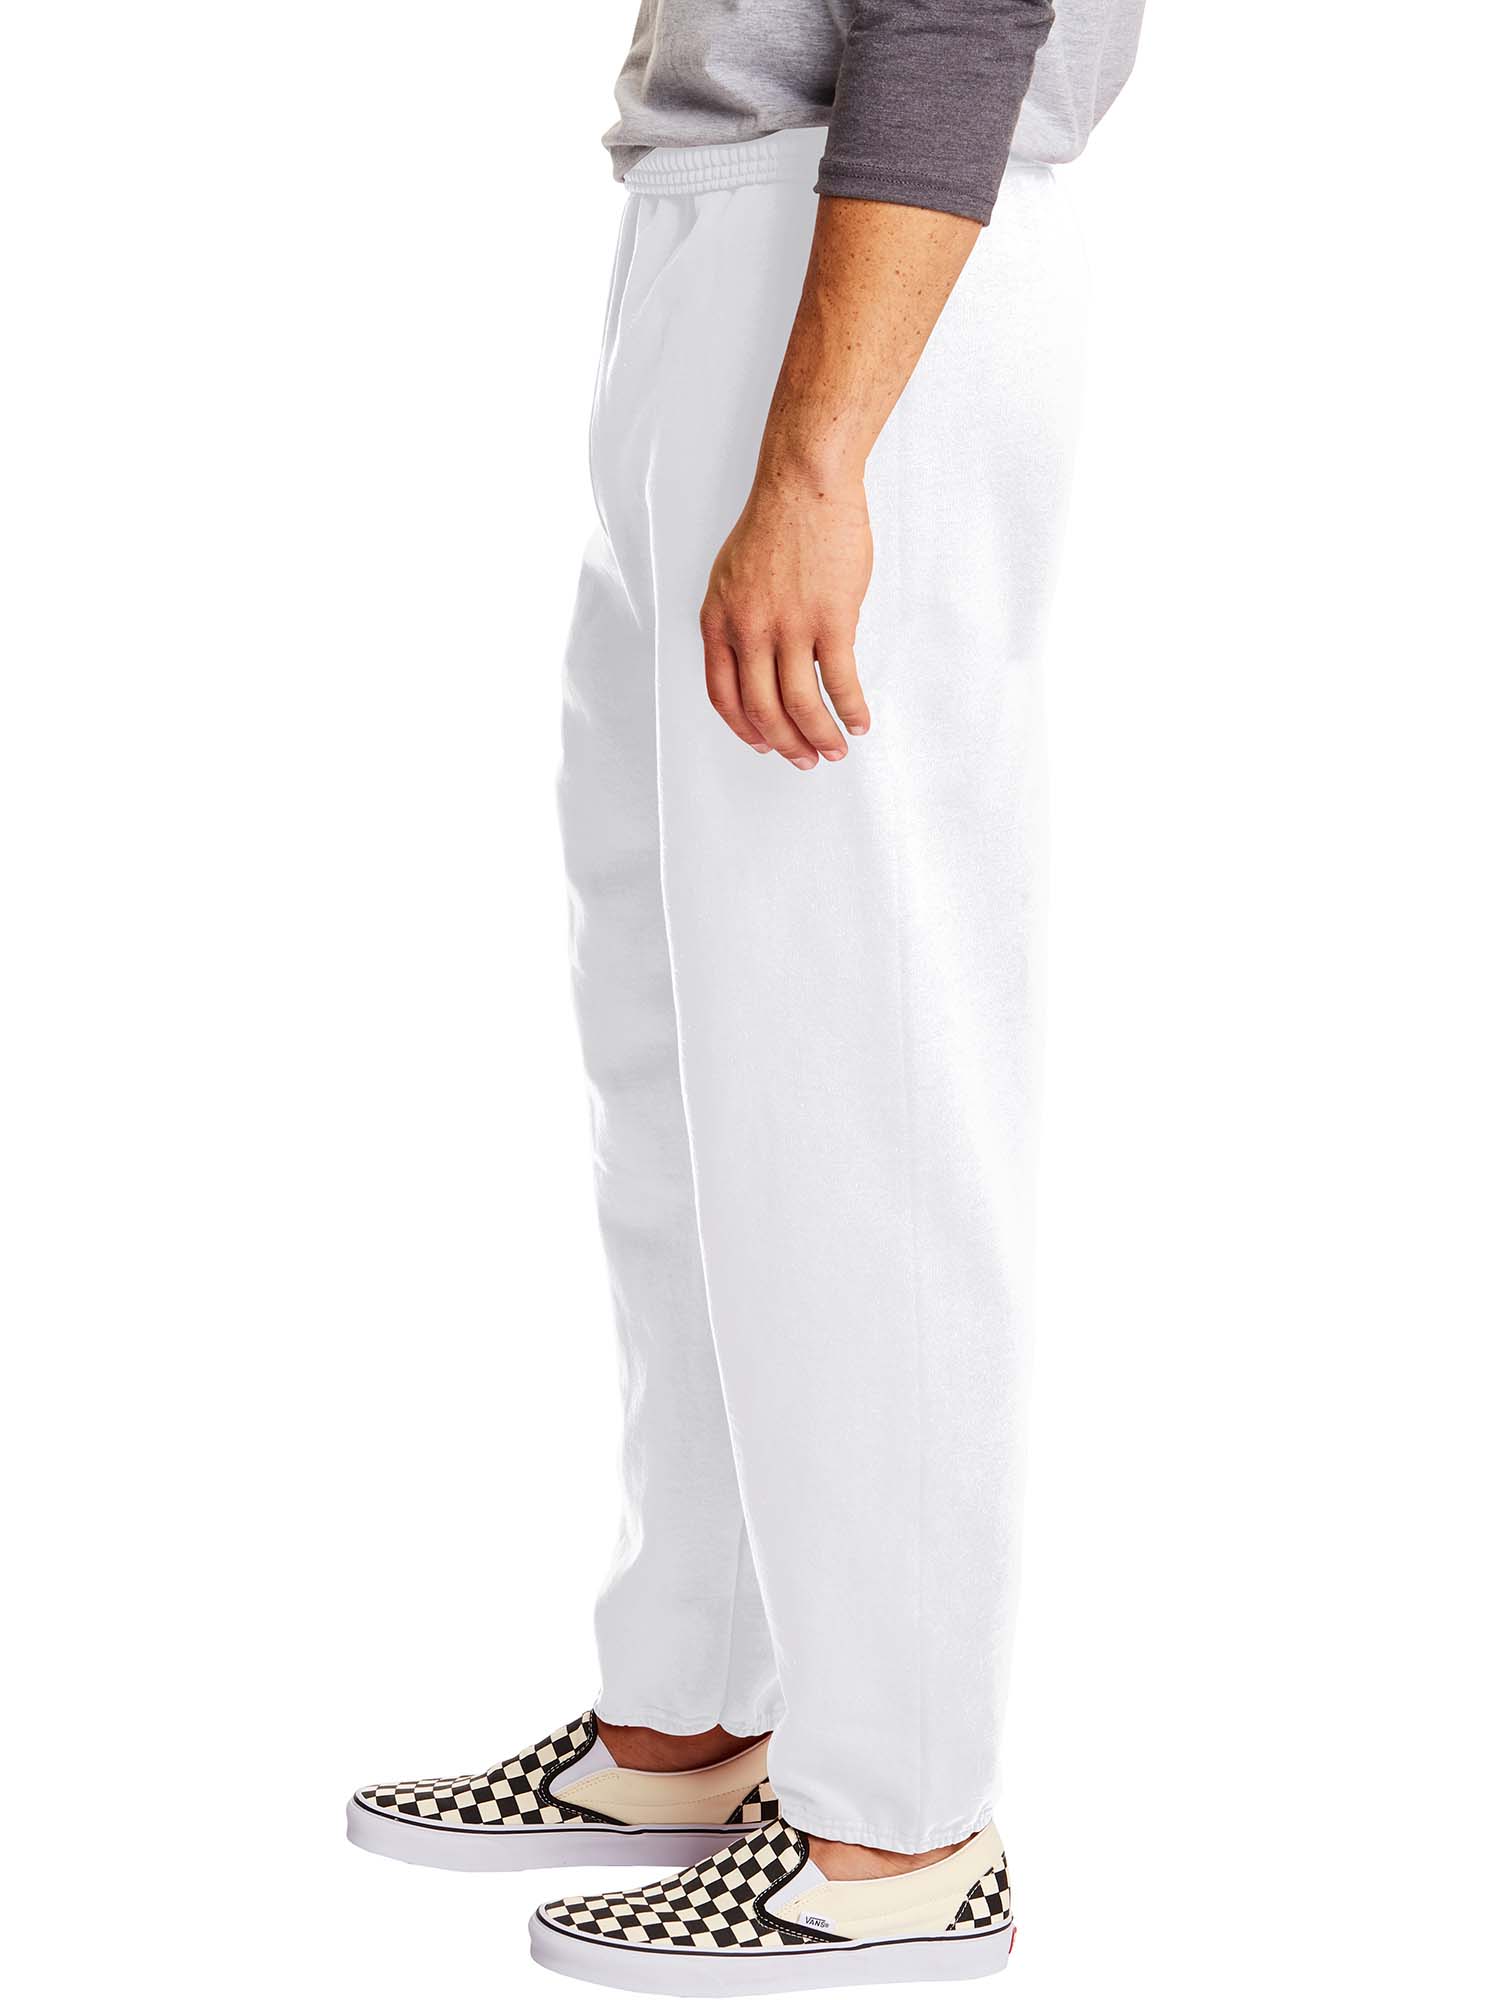 Hanes Men's and Big Men's EcoSmart Fleece Sweatpants, Sizes S-3XL - image 3 of 7